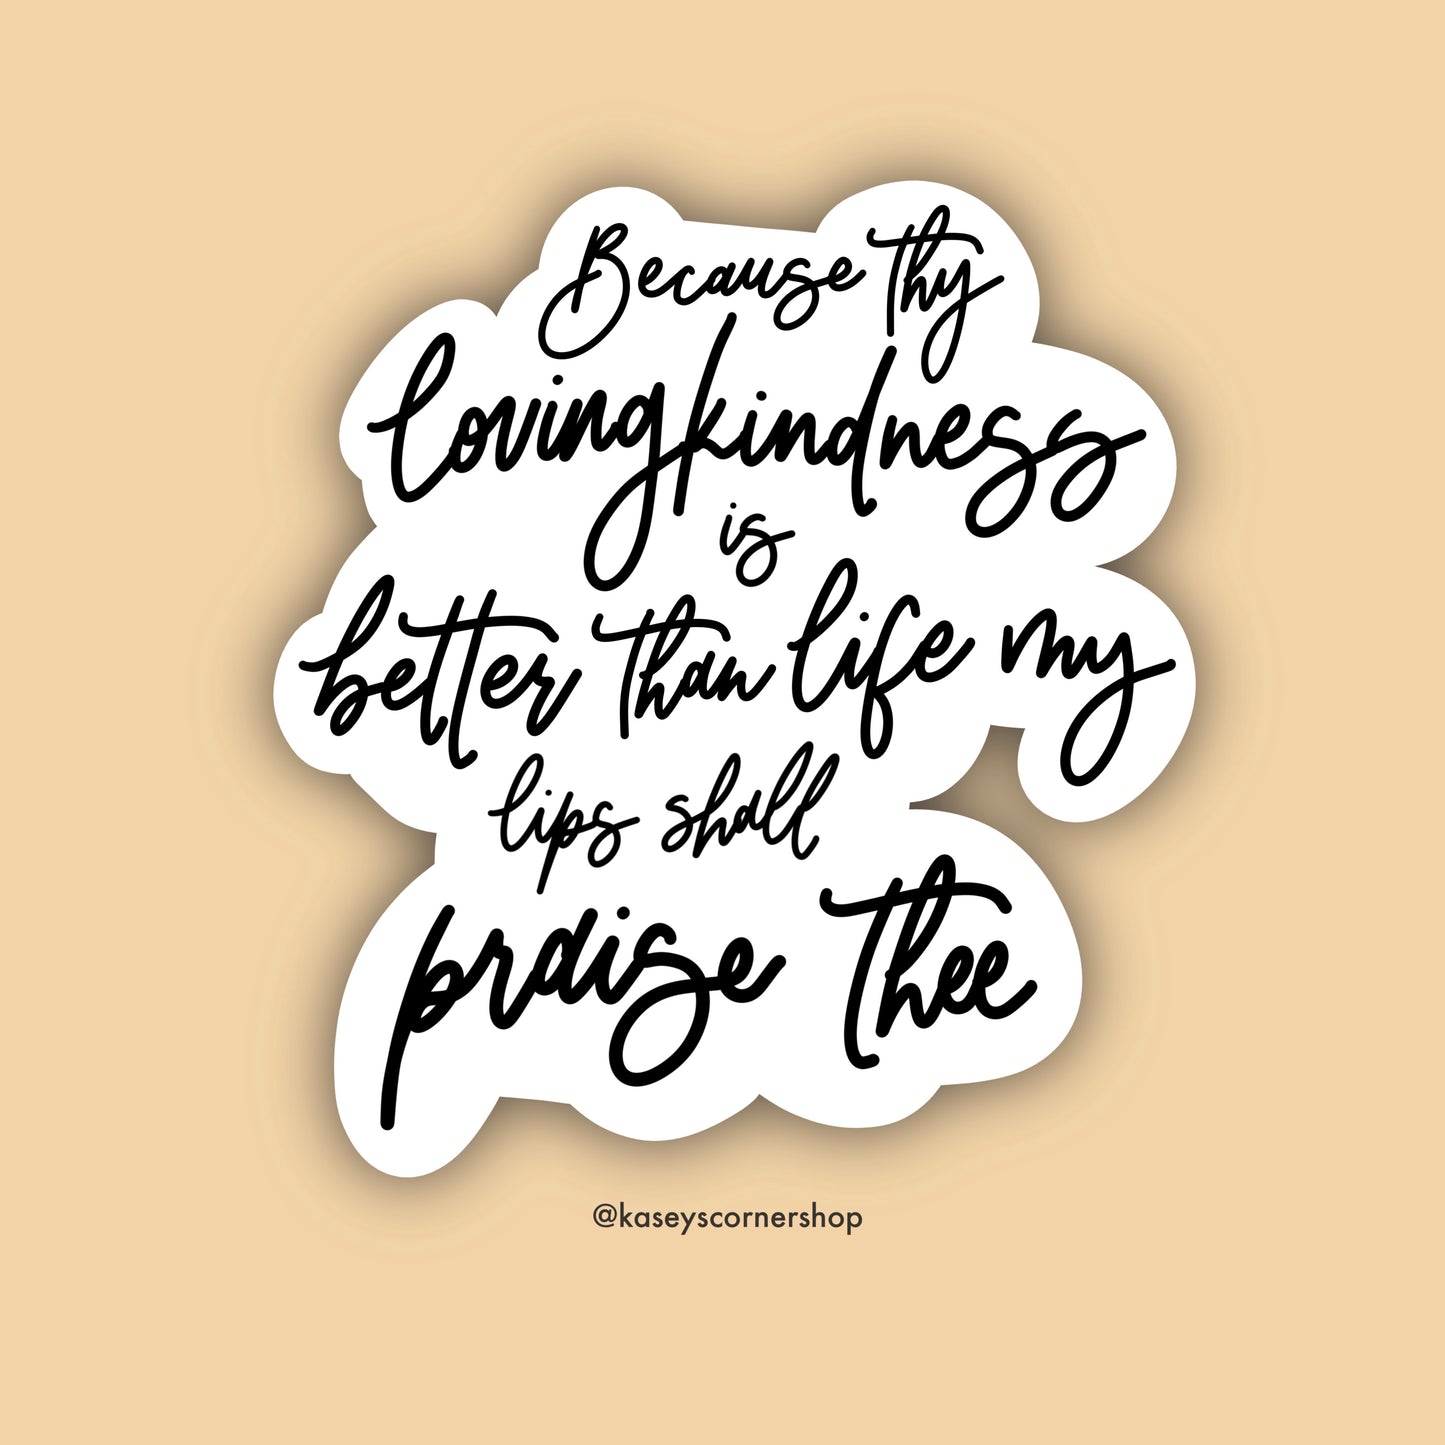 Lovingkindness Hand-Lettered Vinyl Sticker, 3 inches